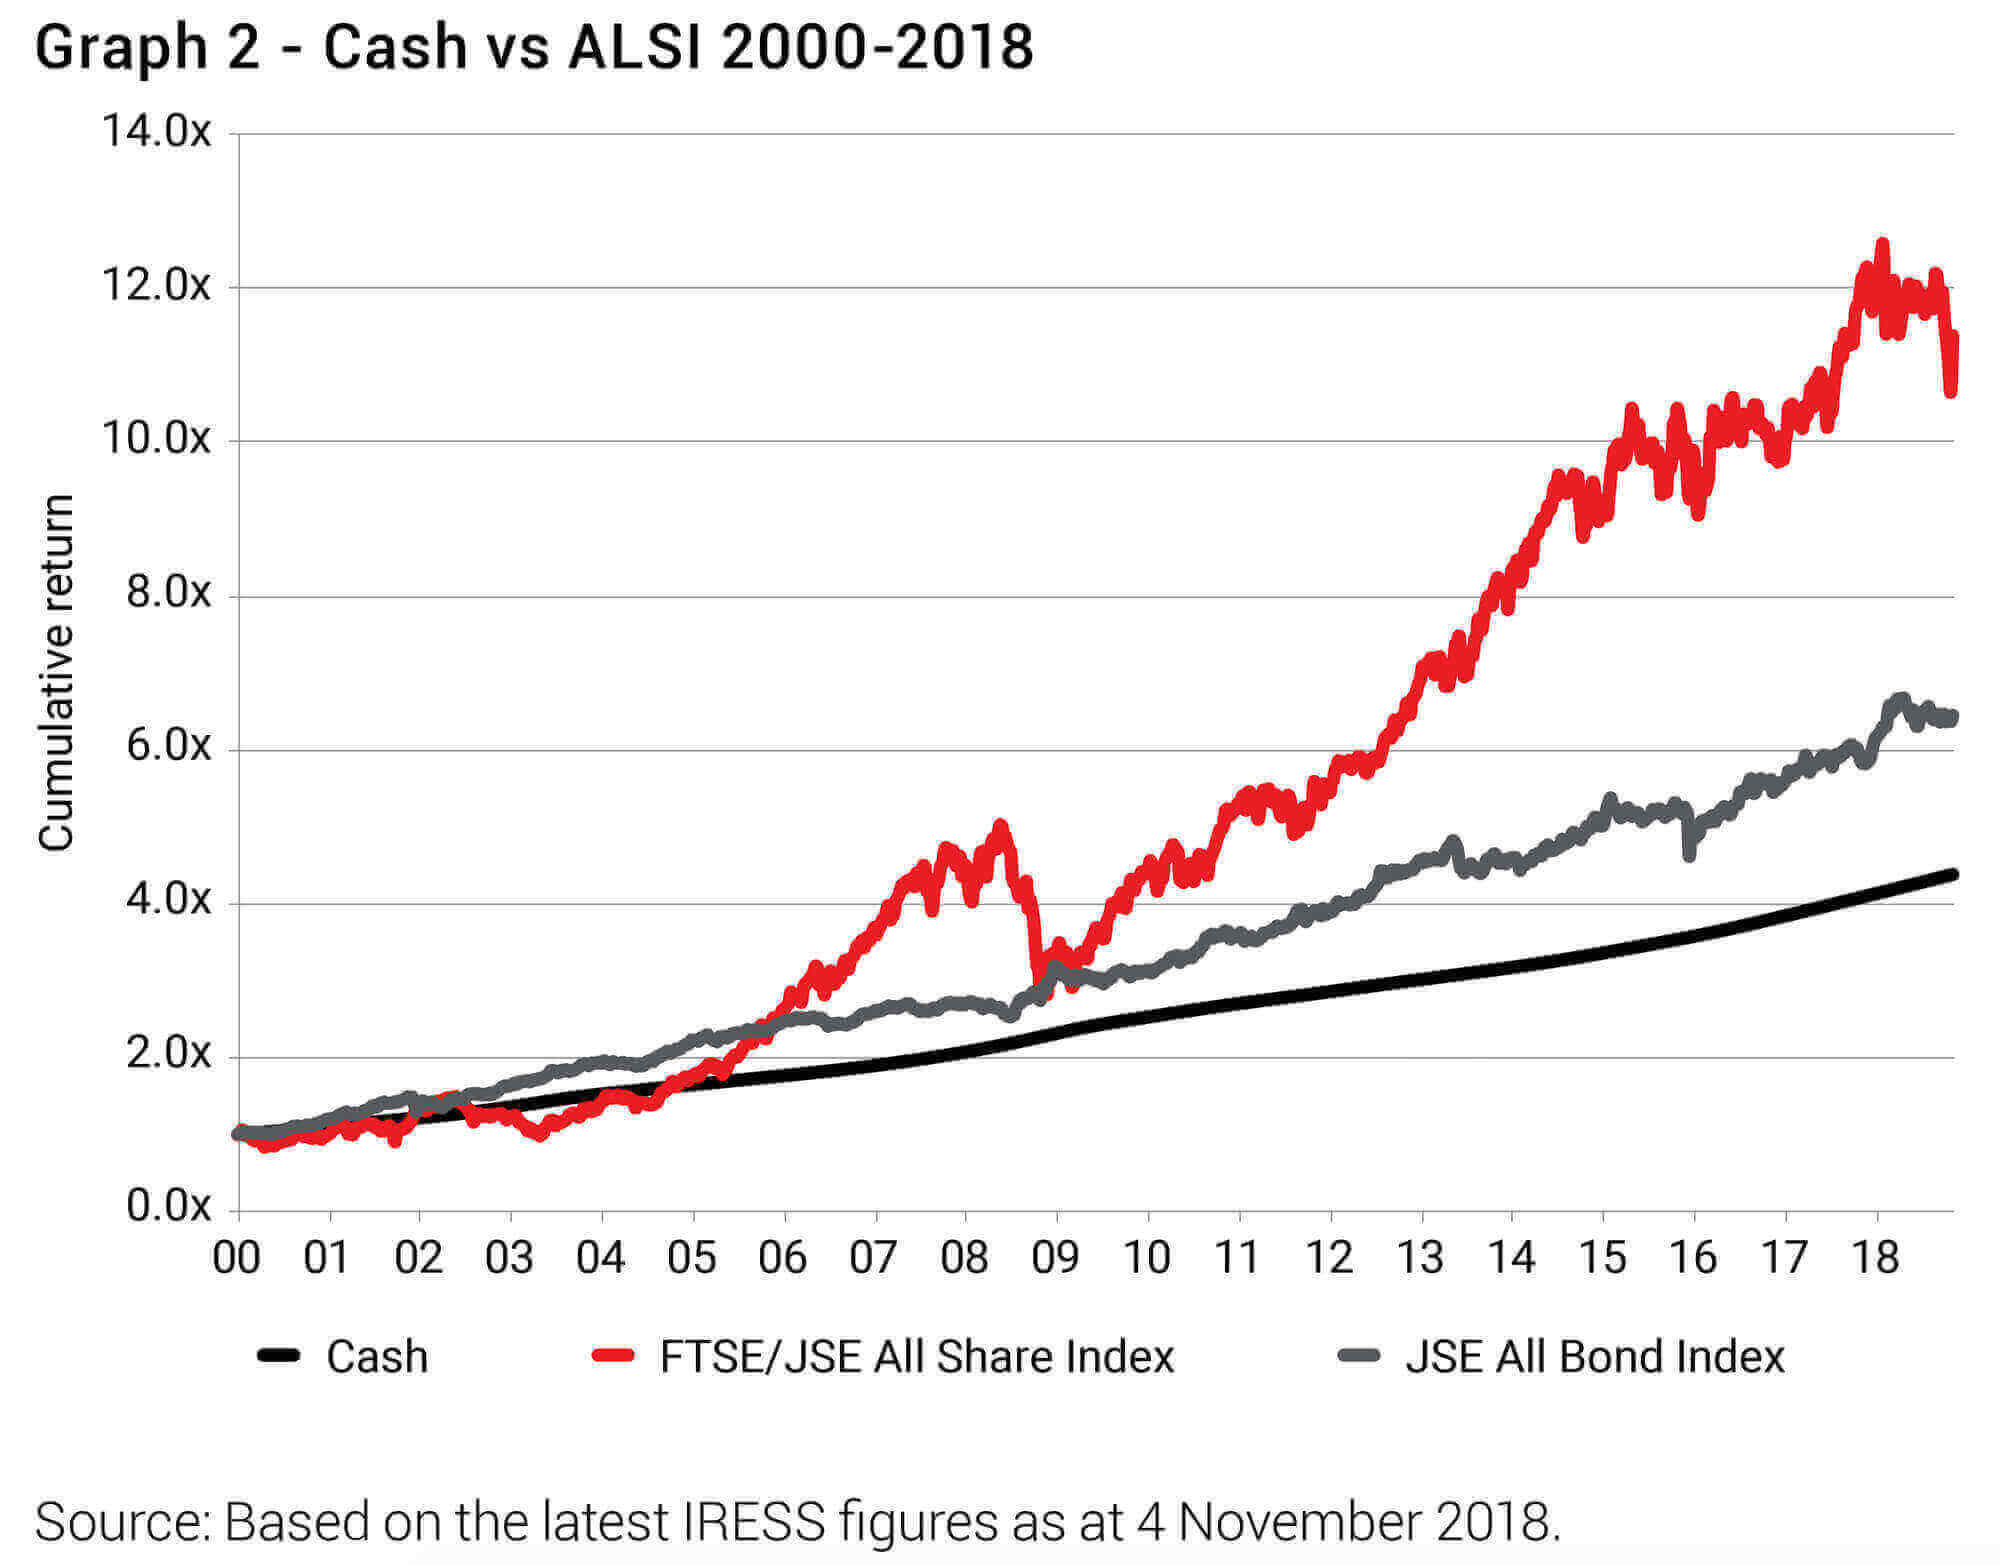 Cash vs ALSI 2000-2018 (Allan Gray)